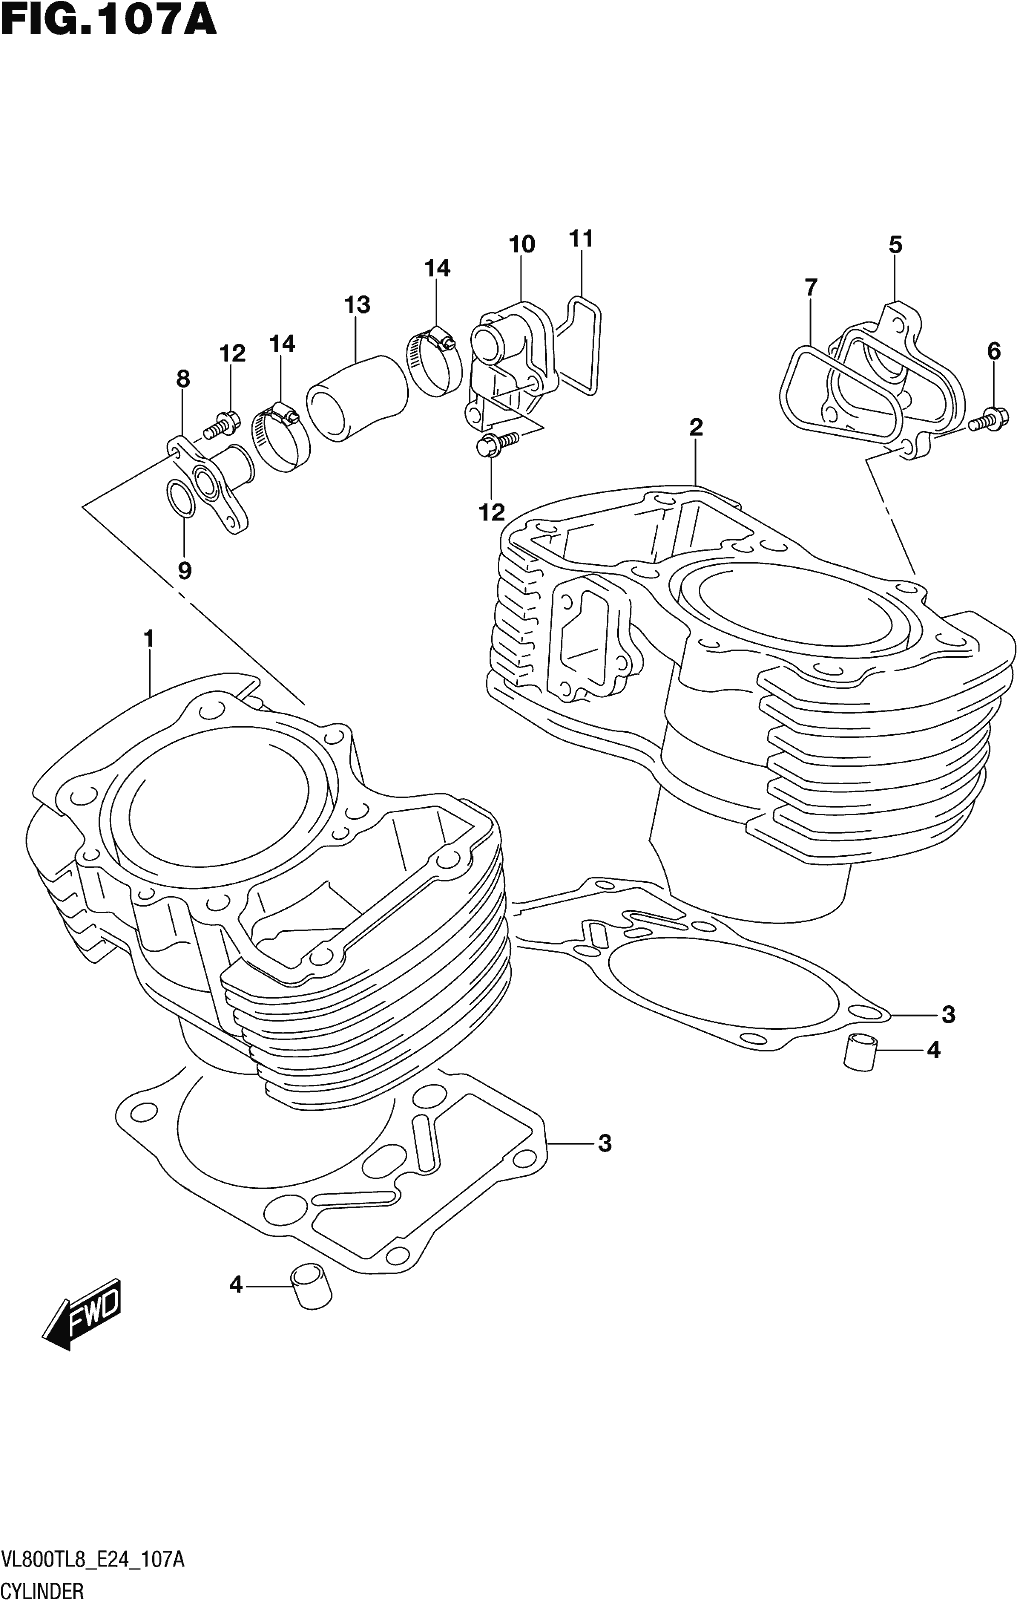 Alle Teile für das Fig. 107a Cylinder des Suzuki VL 800T 2018